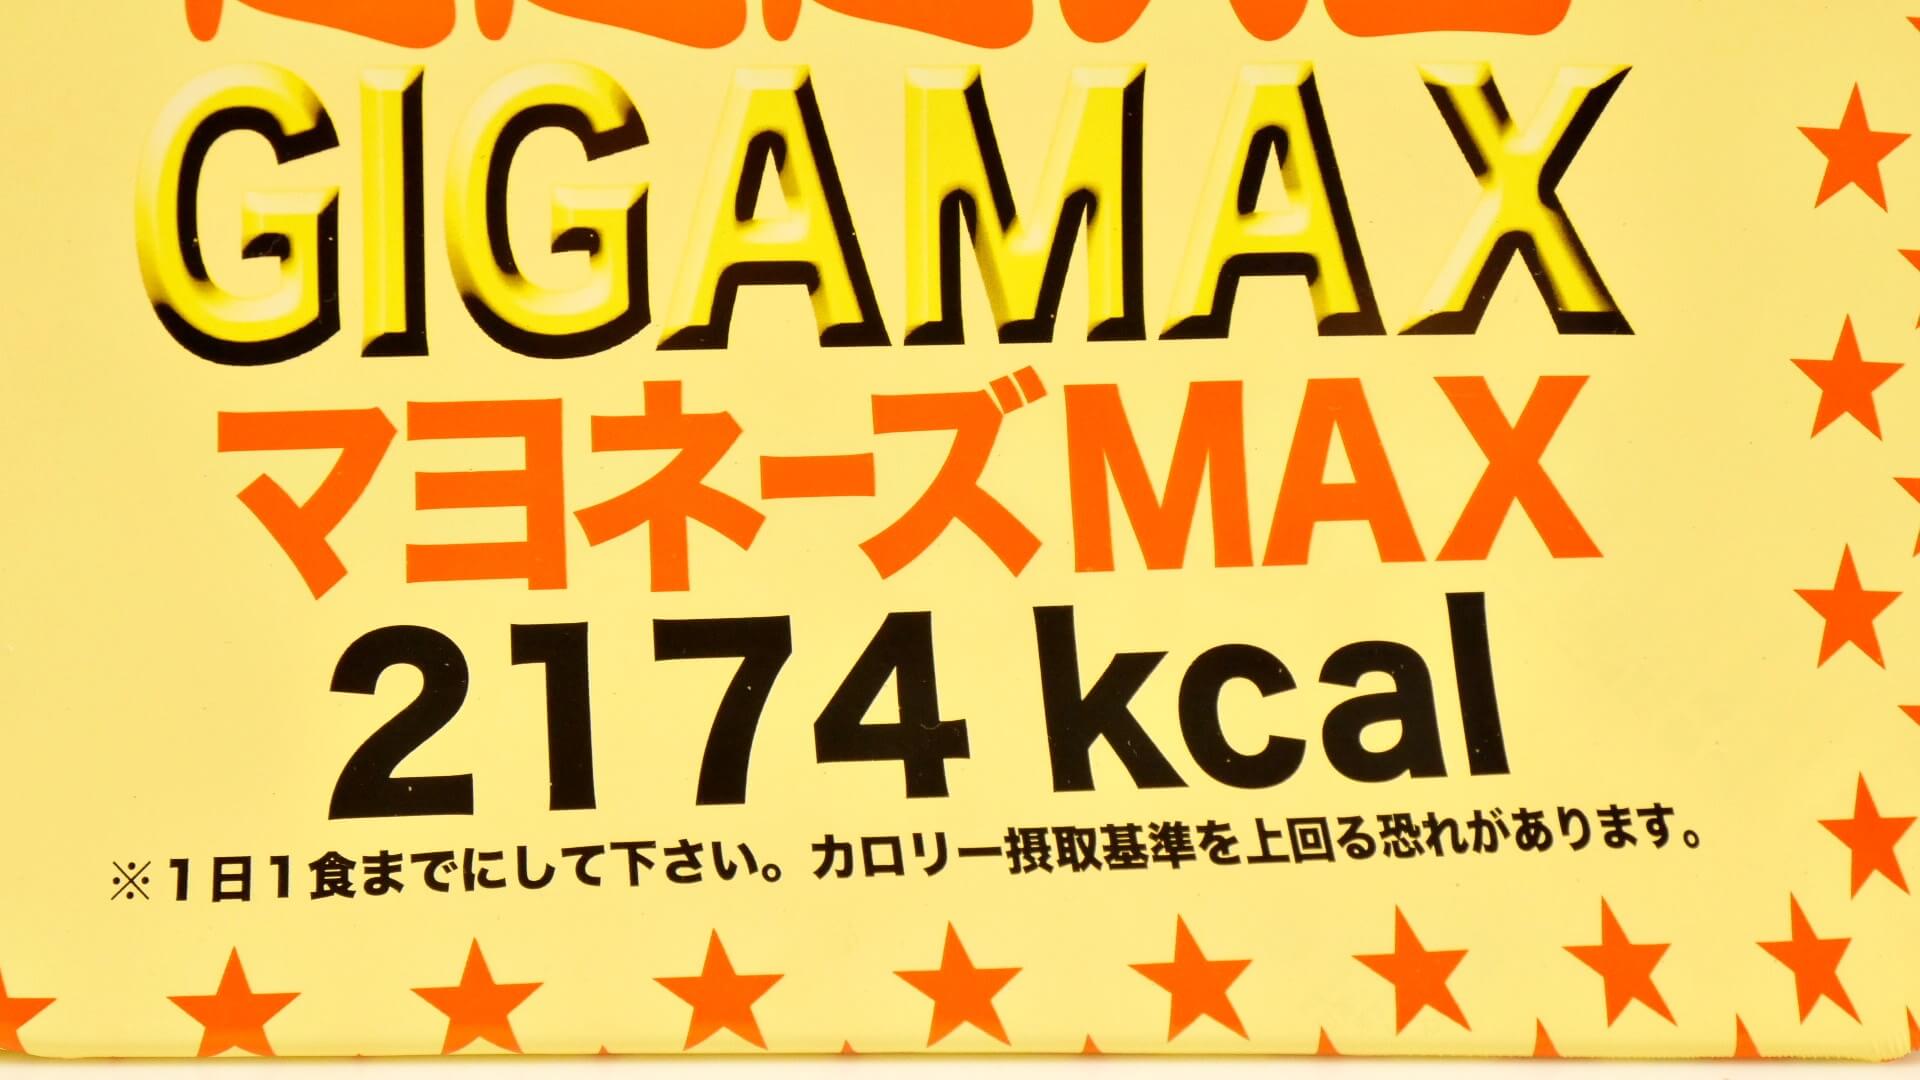 ペヤング ソースやきそば超超超大盛GIGAMAXマヨネーズMAX